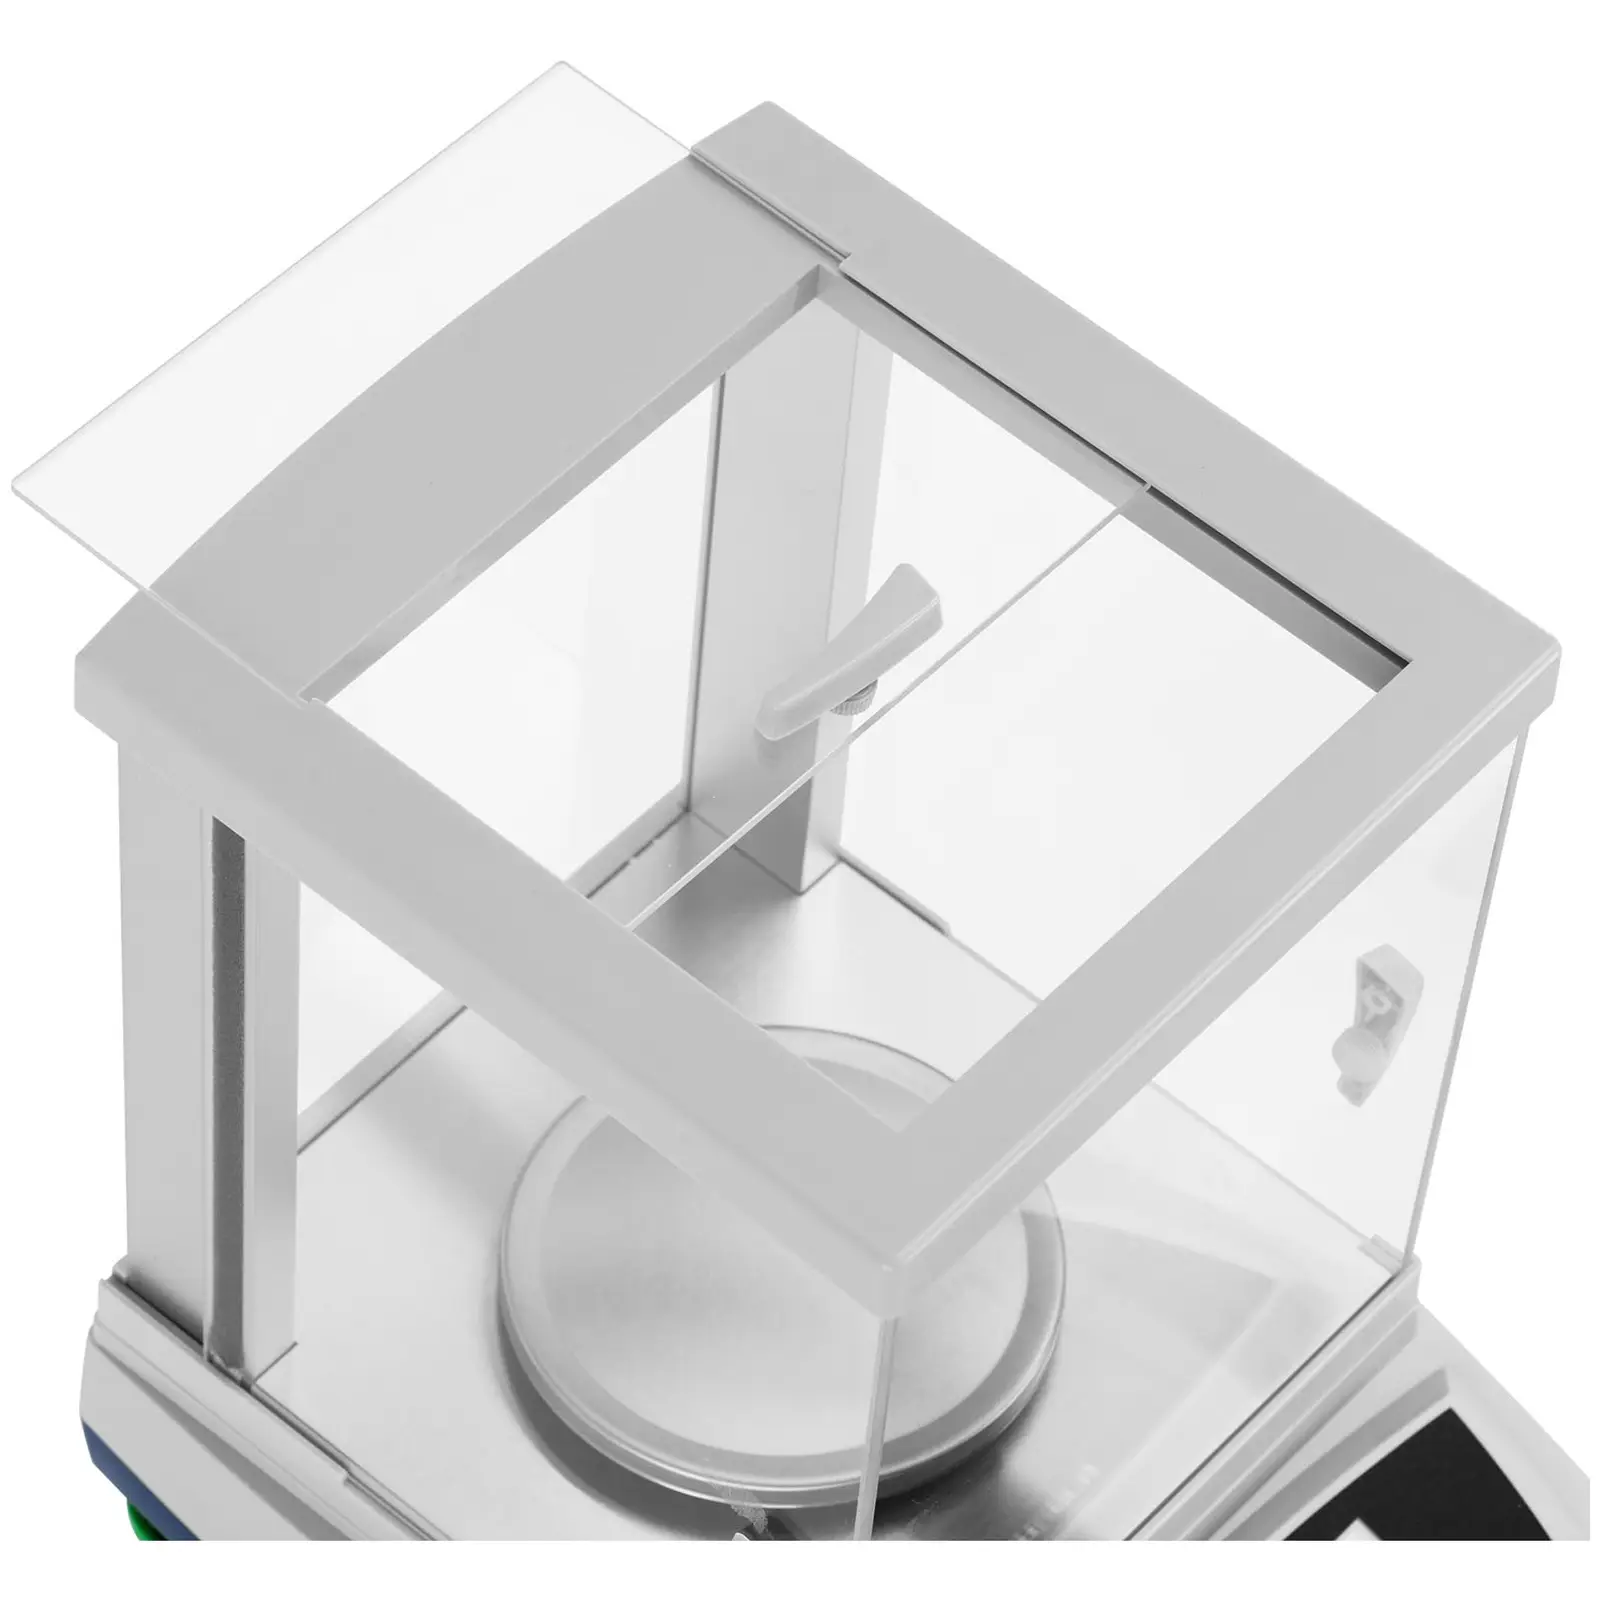 Bilancia di precisione - 1.200 g / 0,01 g - Ø 115 mm - Touch LCD - Protezione dal vento in vetro